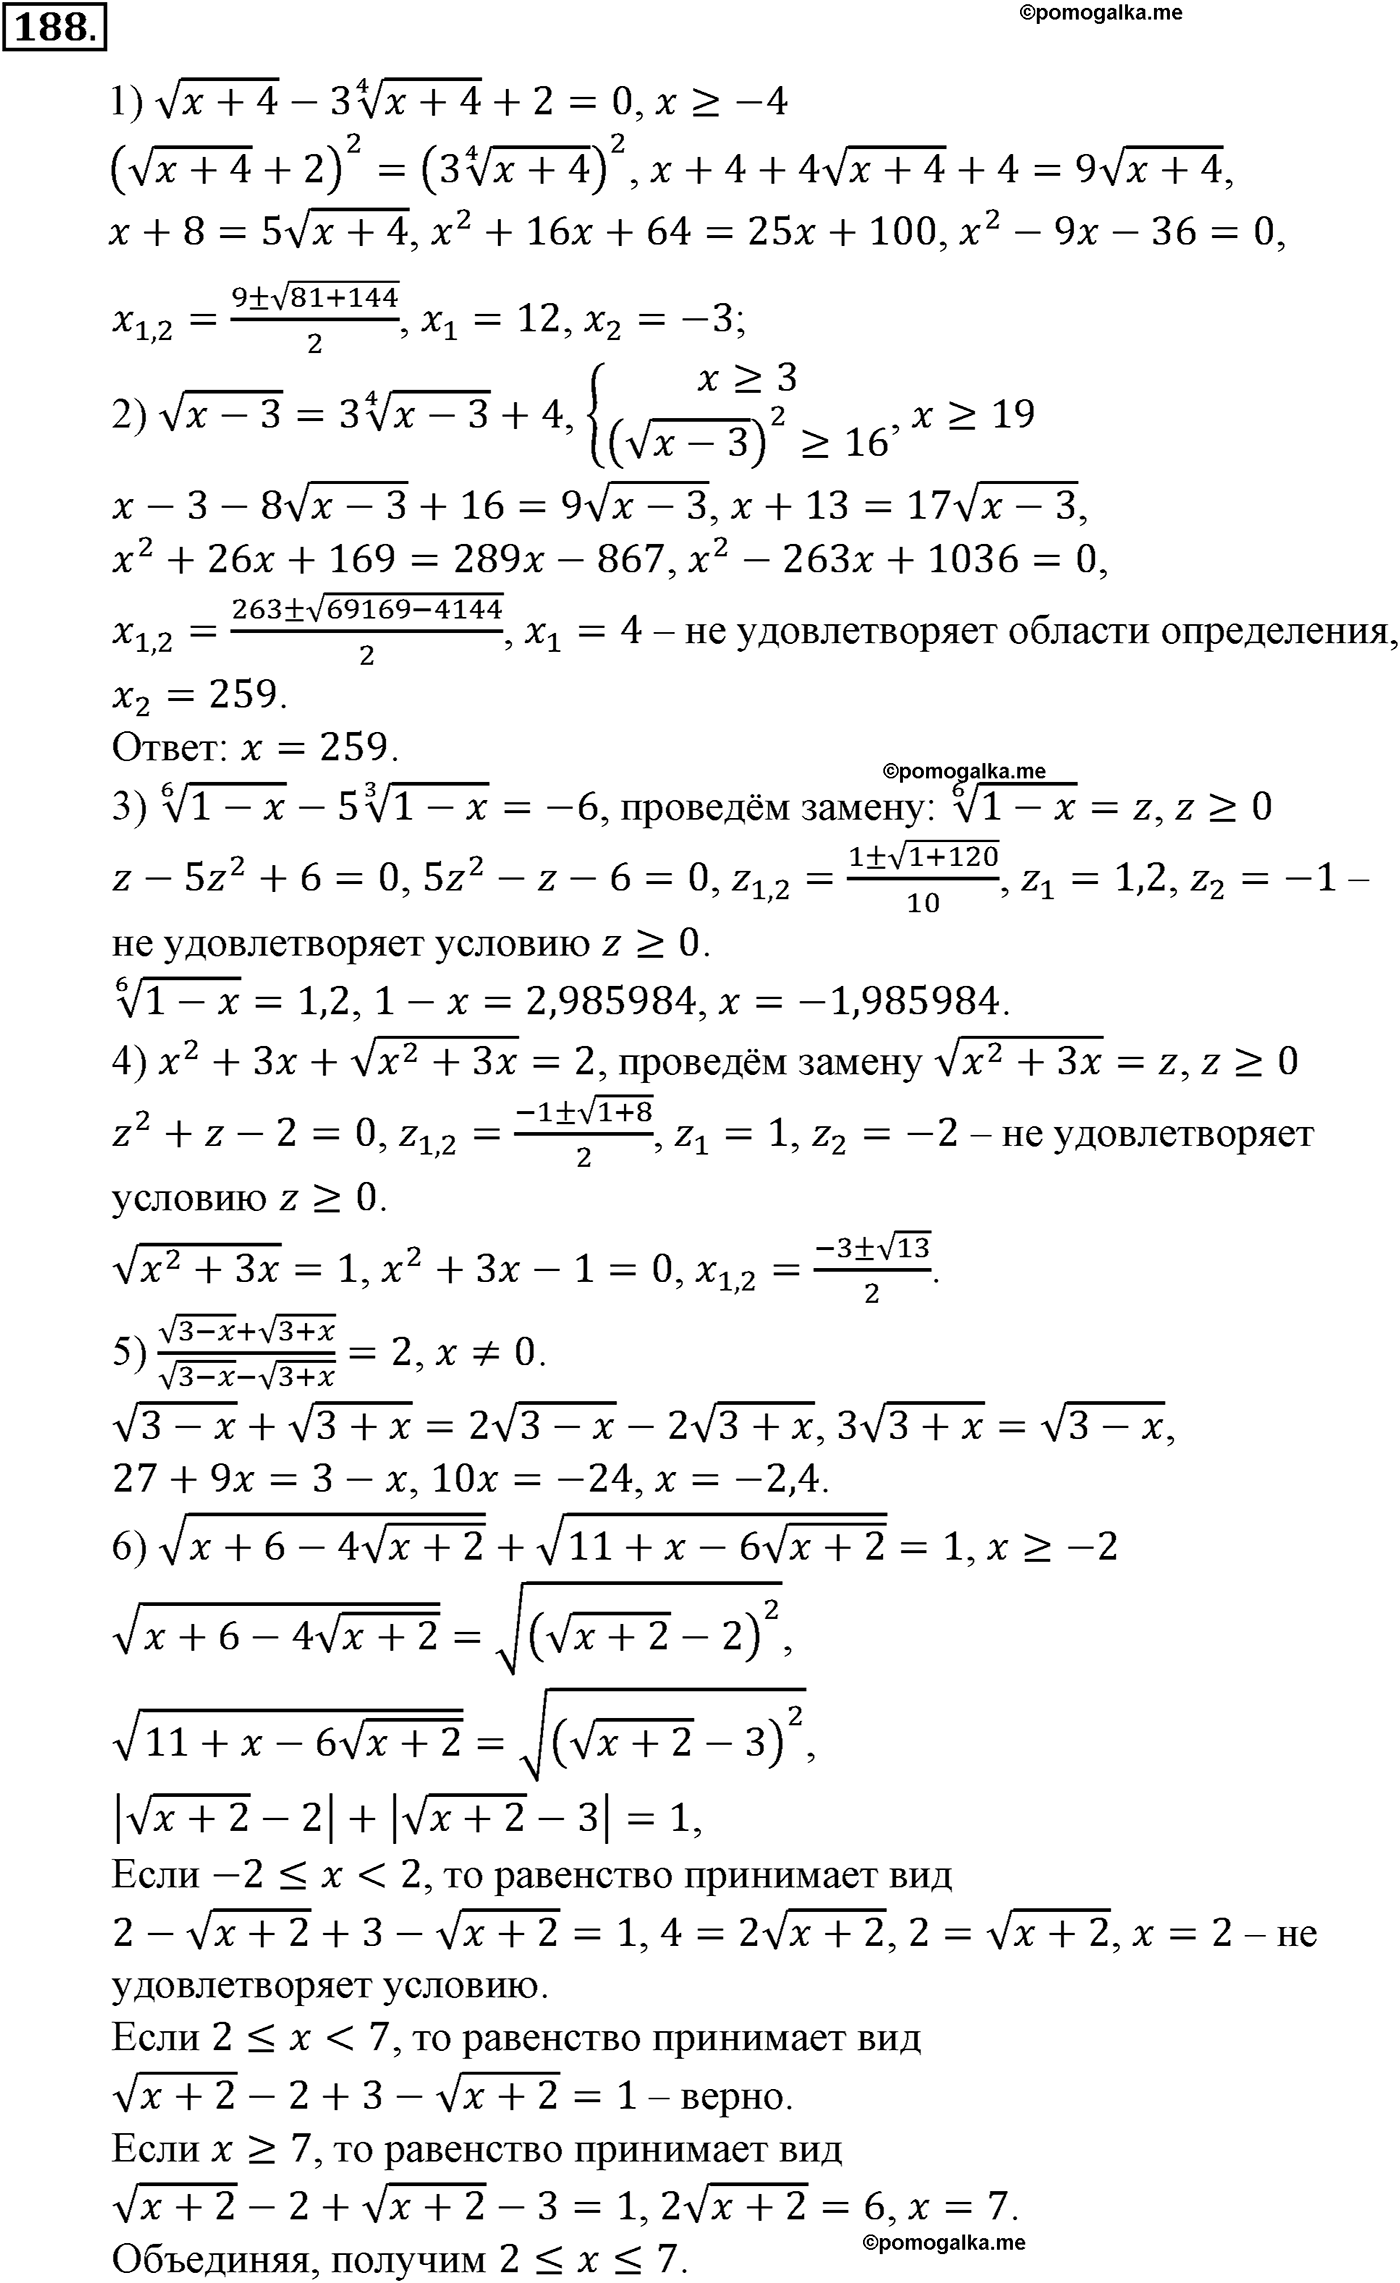 разбор задачи №188 по алгебре за 10-11 класс из учебника Алимова, Колягина